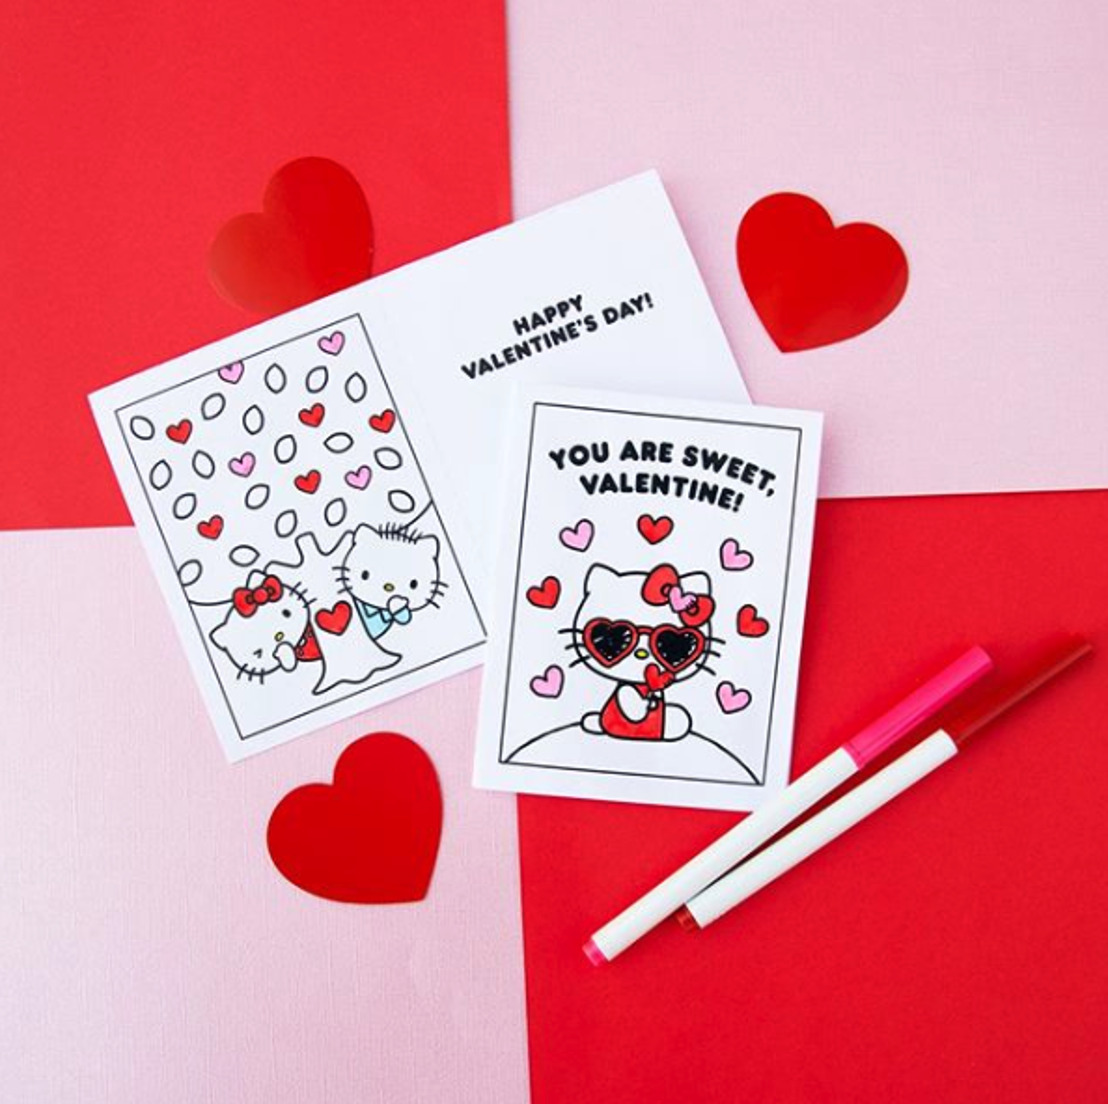 Demuestra tu amor en forma de un regalo de Hello Kitty